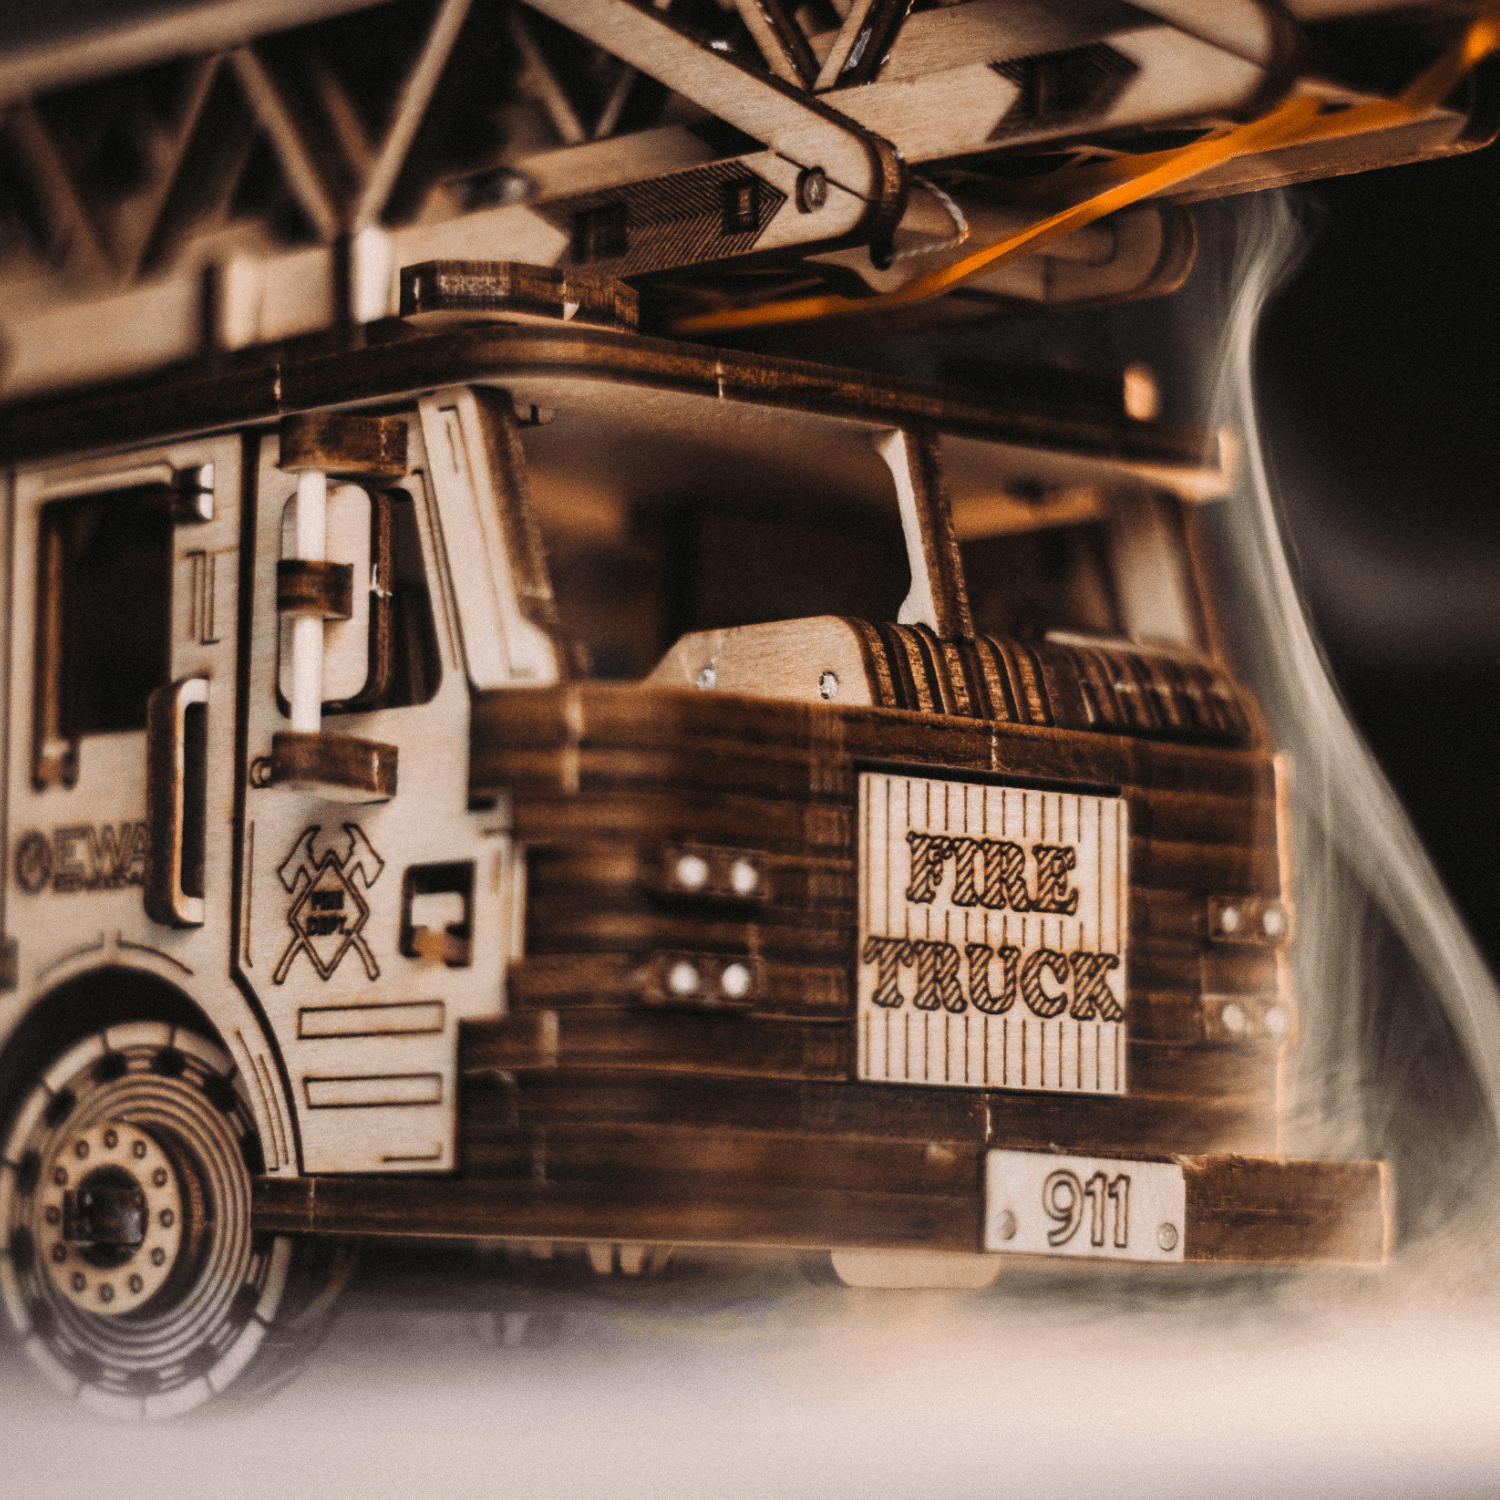 Maquette en bois camion de pompier à assembler